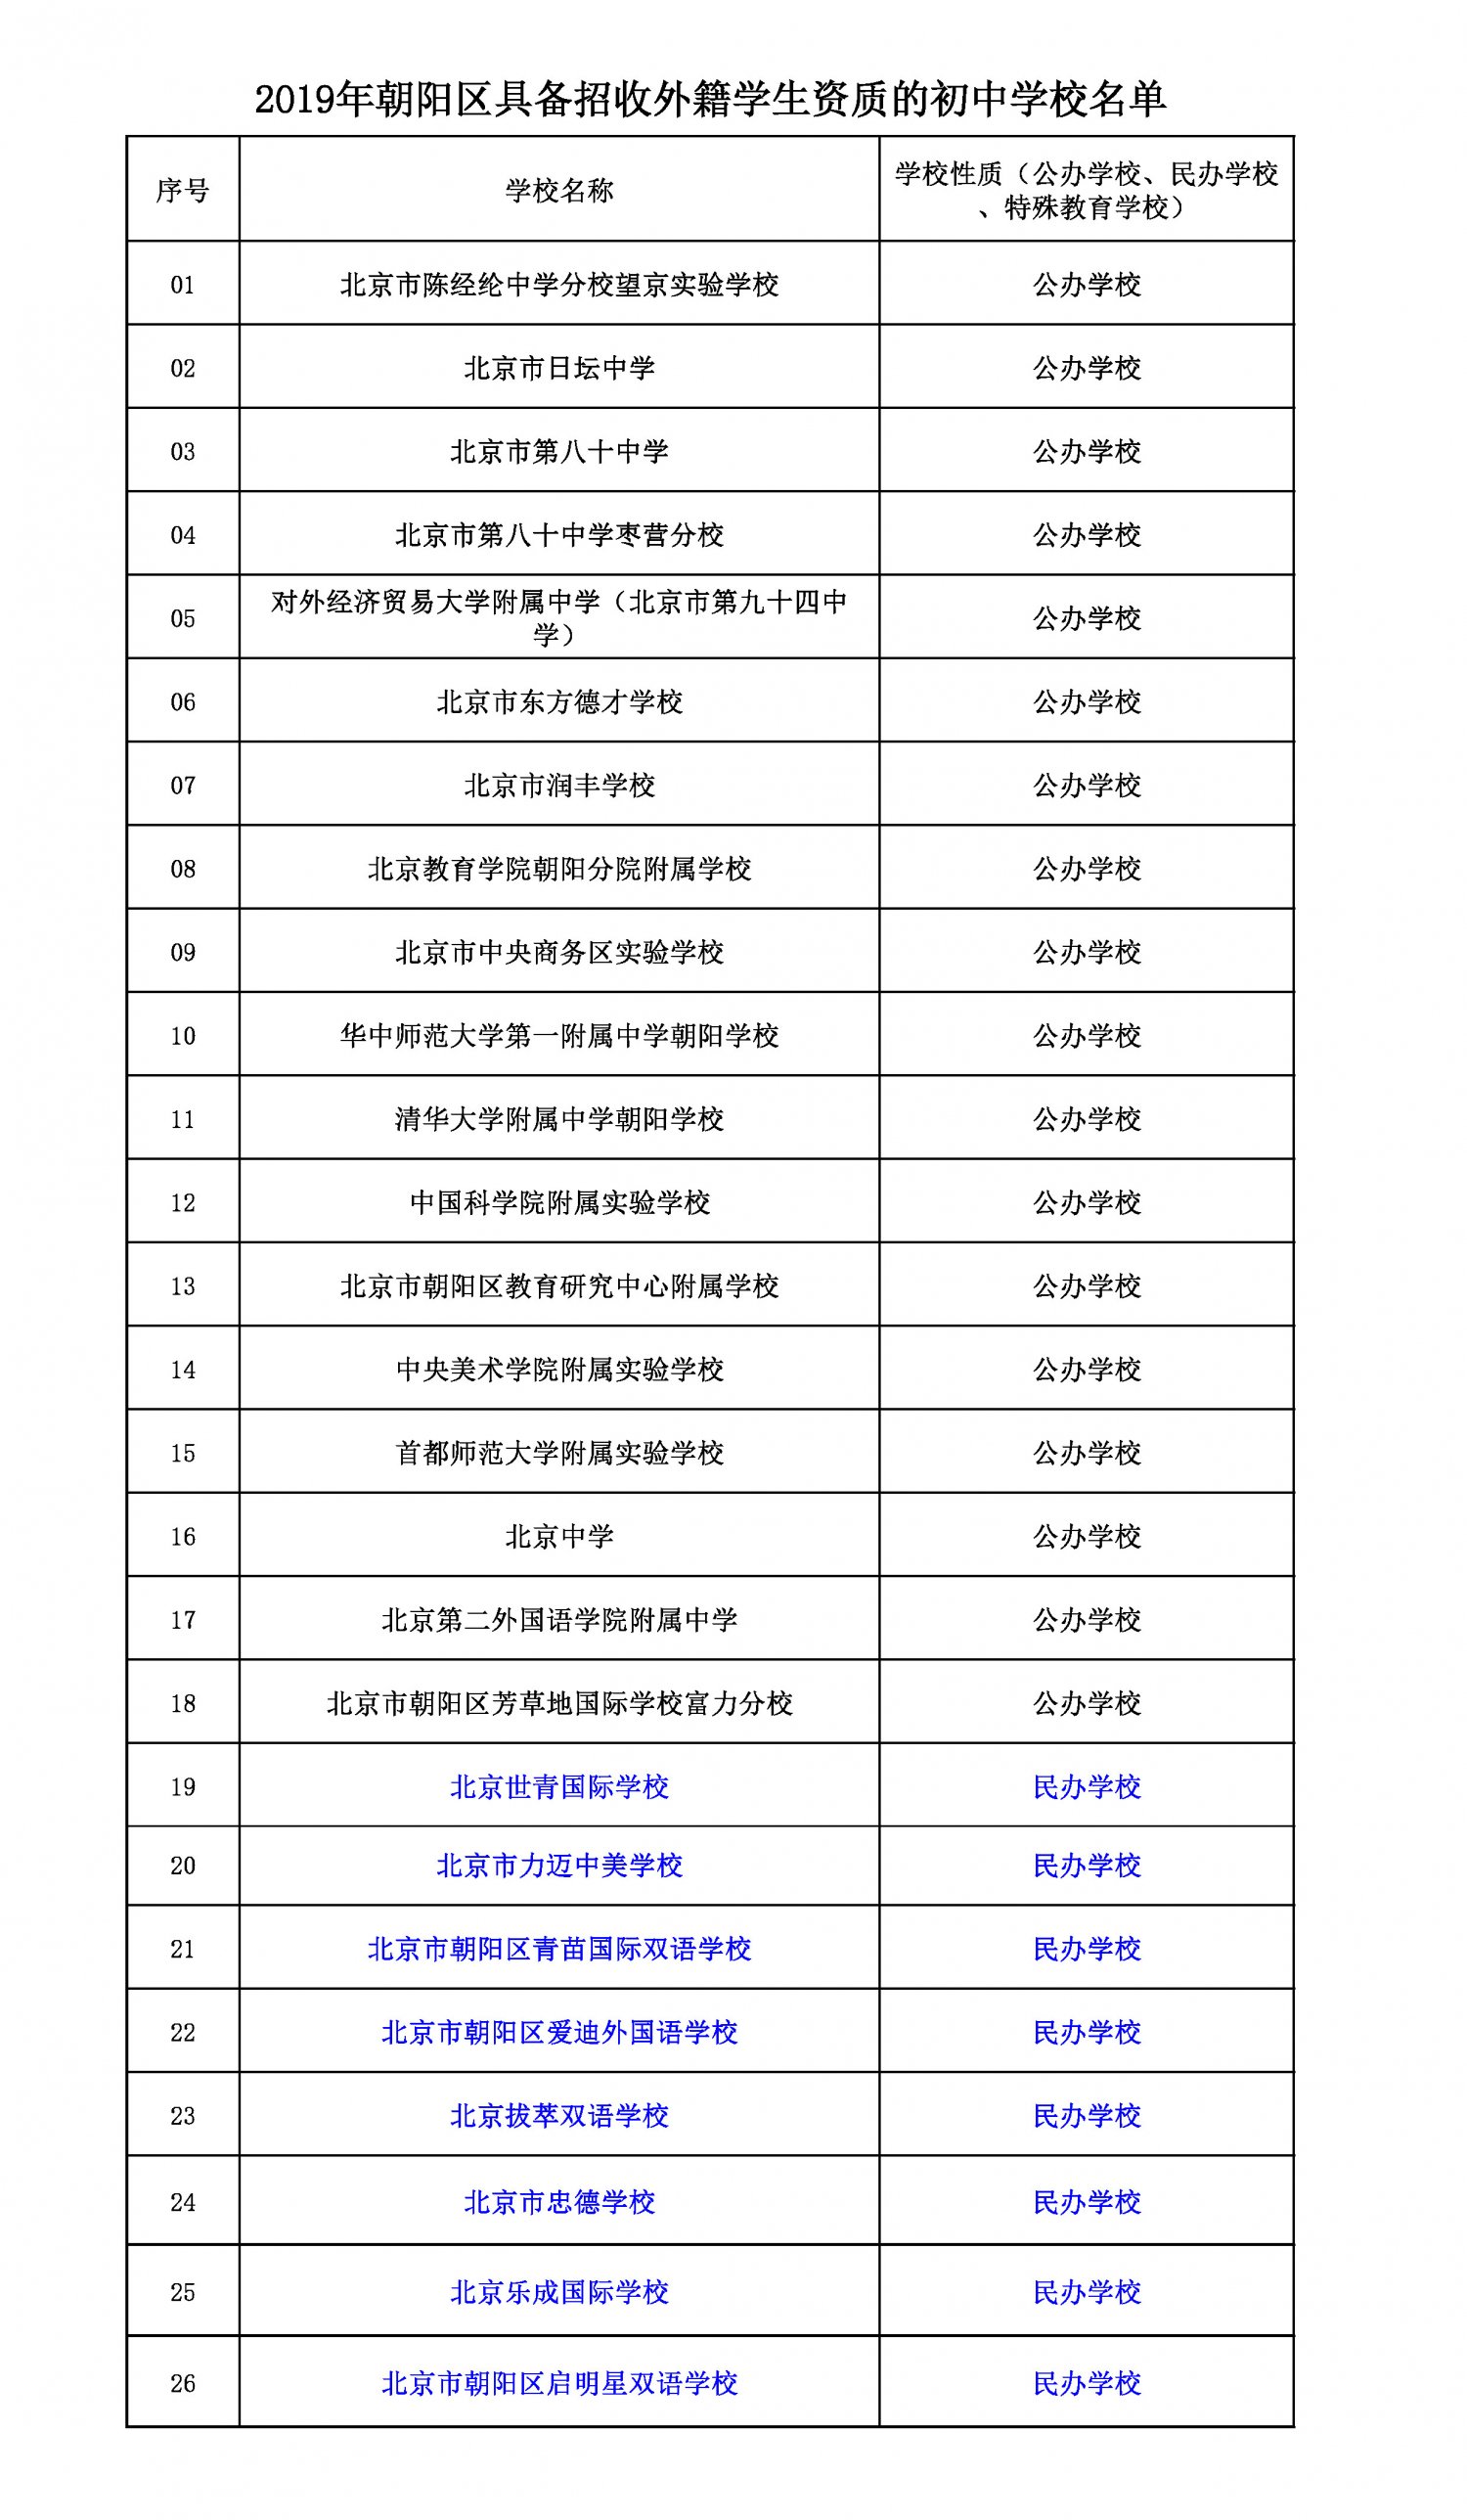 朝阳2019小升初招收外籍学生的学校名单